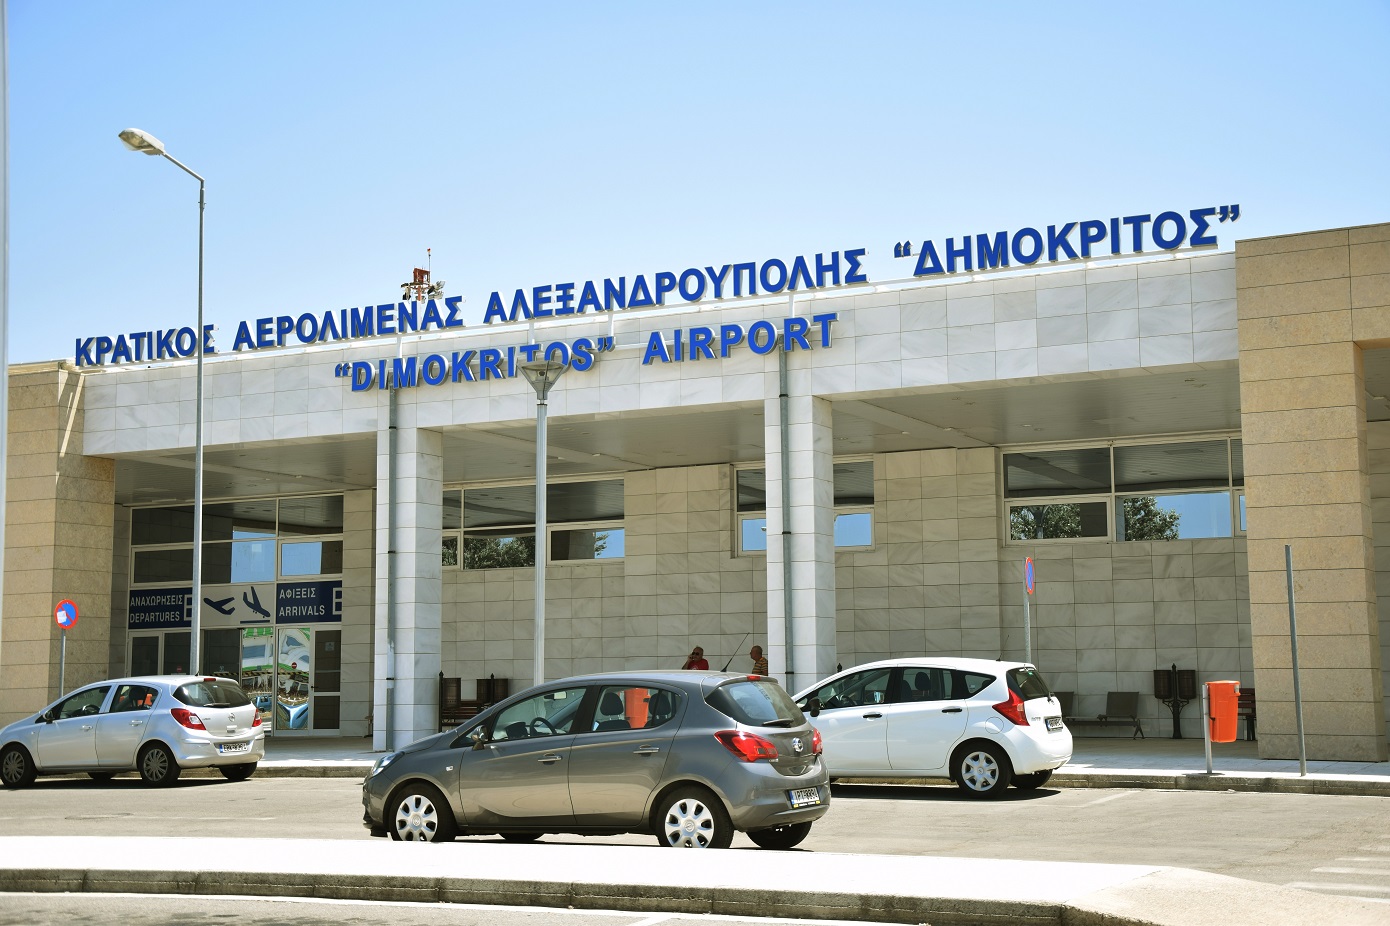 Πουλιά επιτέθηκαν σε αεροπλάνο που απογειωνόταν από το αεροδρόμιο της Αλεξανδρούπολης